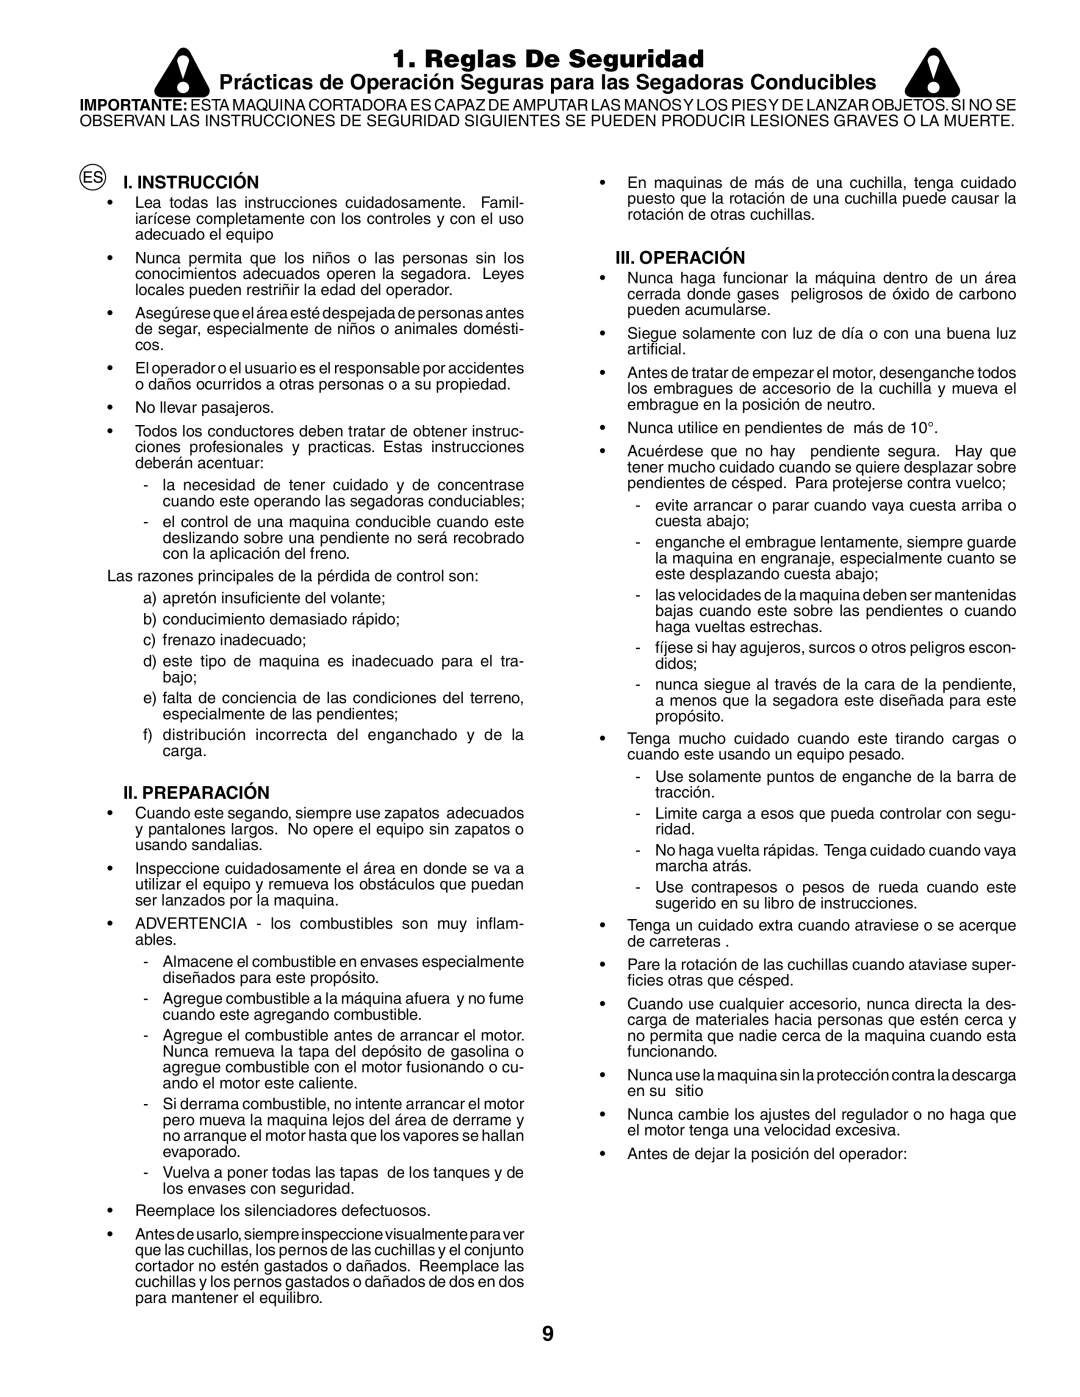 Jonsered LT2117CMA Reglas De Seguridad, Prácticas de Operación Seguras para las Segadoras Conducibles, I. Instrucción 